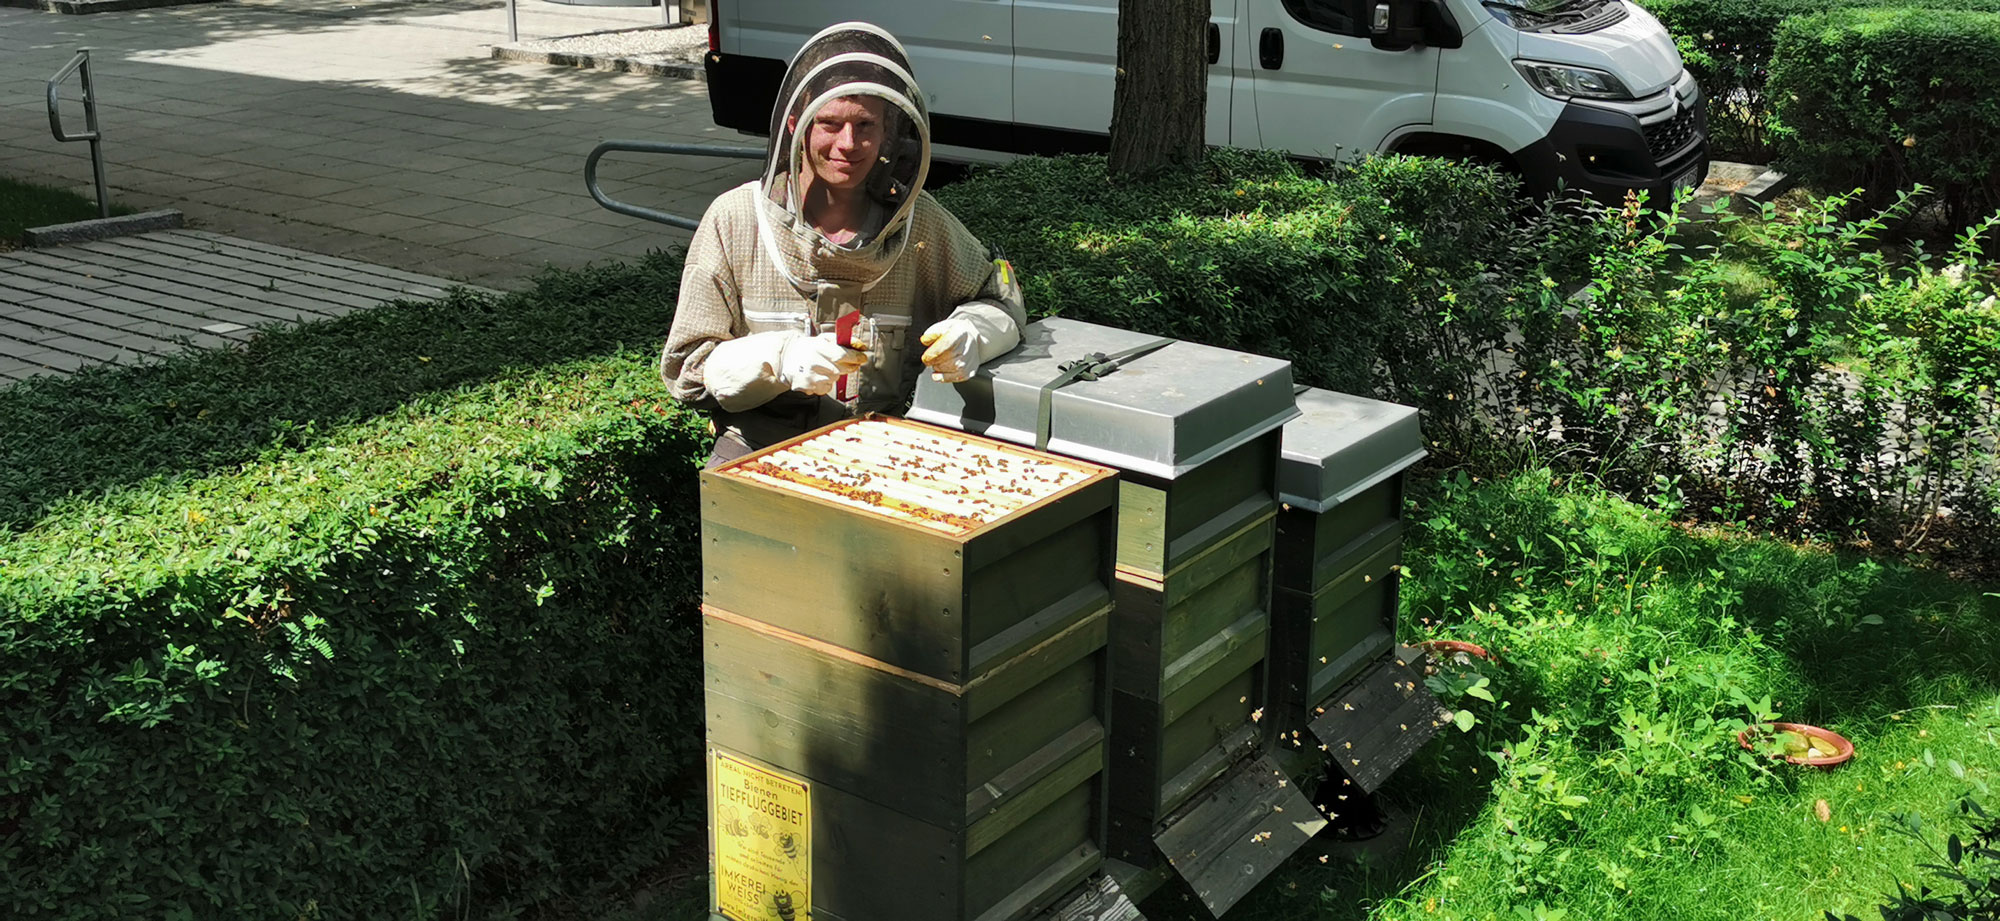 Bienenpatenschaft - Unterstützen Sie unsere summenden Helfer! Entdecken Sie die wertvolle Welt der Bienenpatenschaften und leisten Sie einen Beitrag zum Schutz unserer bedrohten Bestäuber. Durch Ihre Bienenpatenschaft fördern Sie den Erhalt der Bienenpopulation und ermöglichen es den fleißigen Insekten, weiterhin unsere Pflanzen zu bestäuben und köstlichen Honig zu produzieren. Werden Sie Teil dieses nachhaltigen Engagements und helfen Sie den Bienen, ihre wichtige Rolle in unserem Ökosystem zu bewahren. Erfahren Sie jetzt mehr über Bienenpatenschaften und wie Sie aktiv werden können!